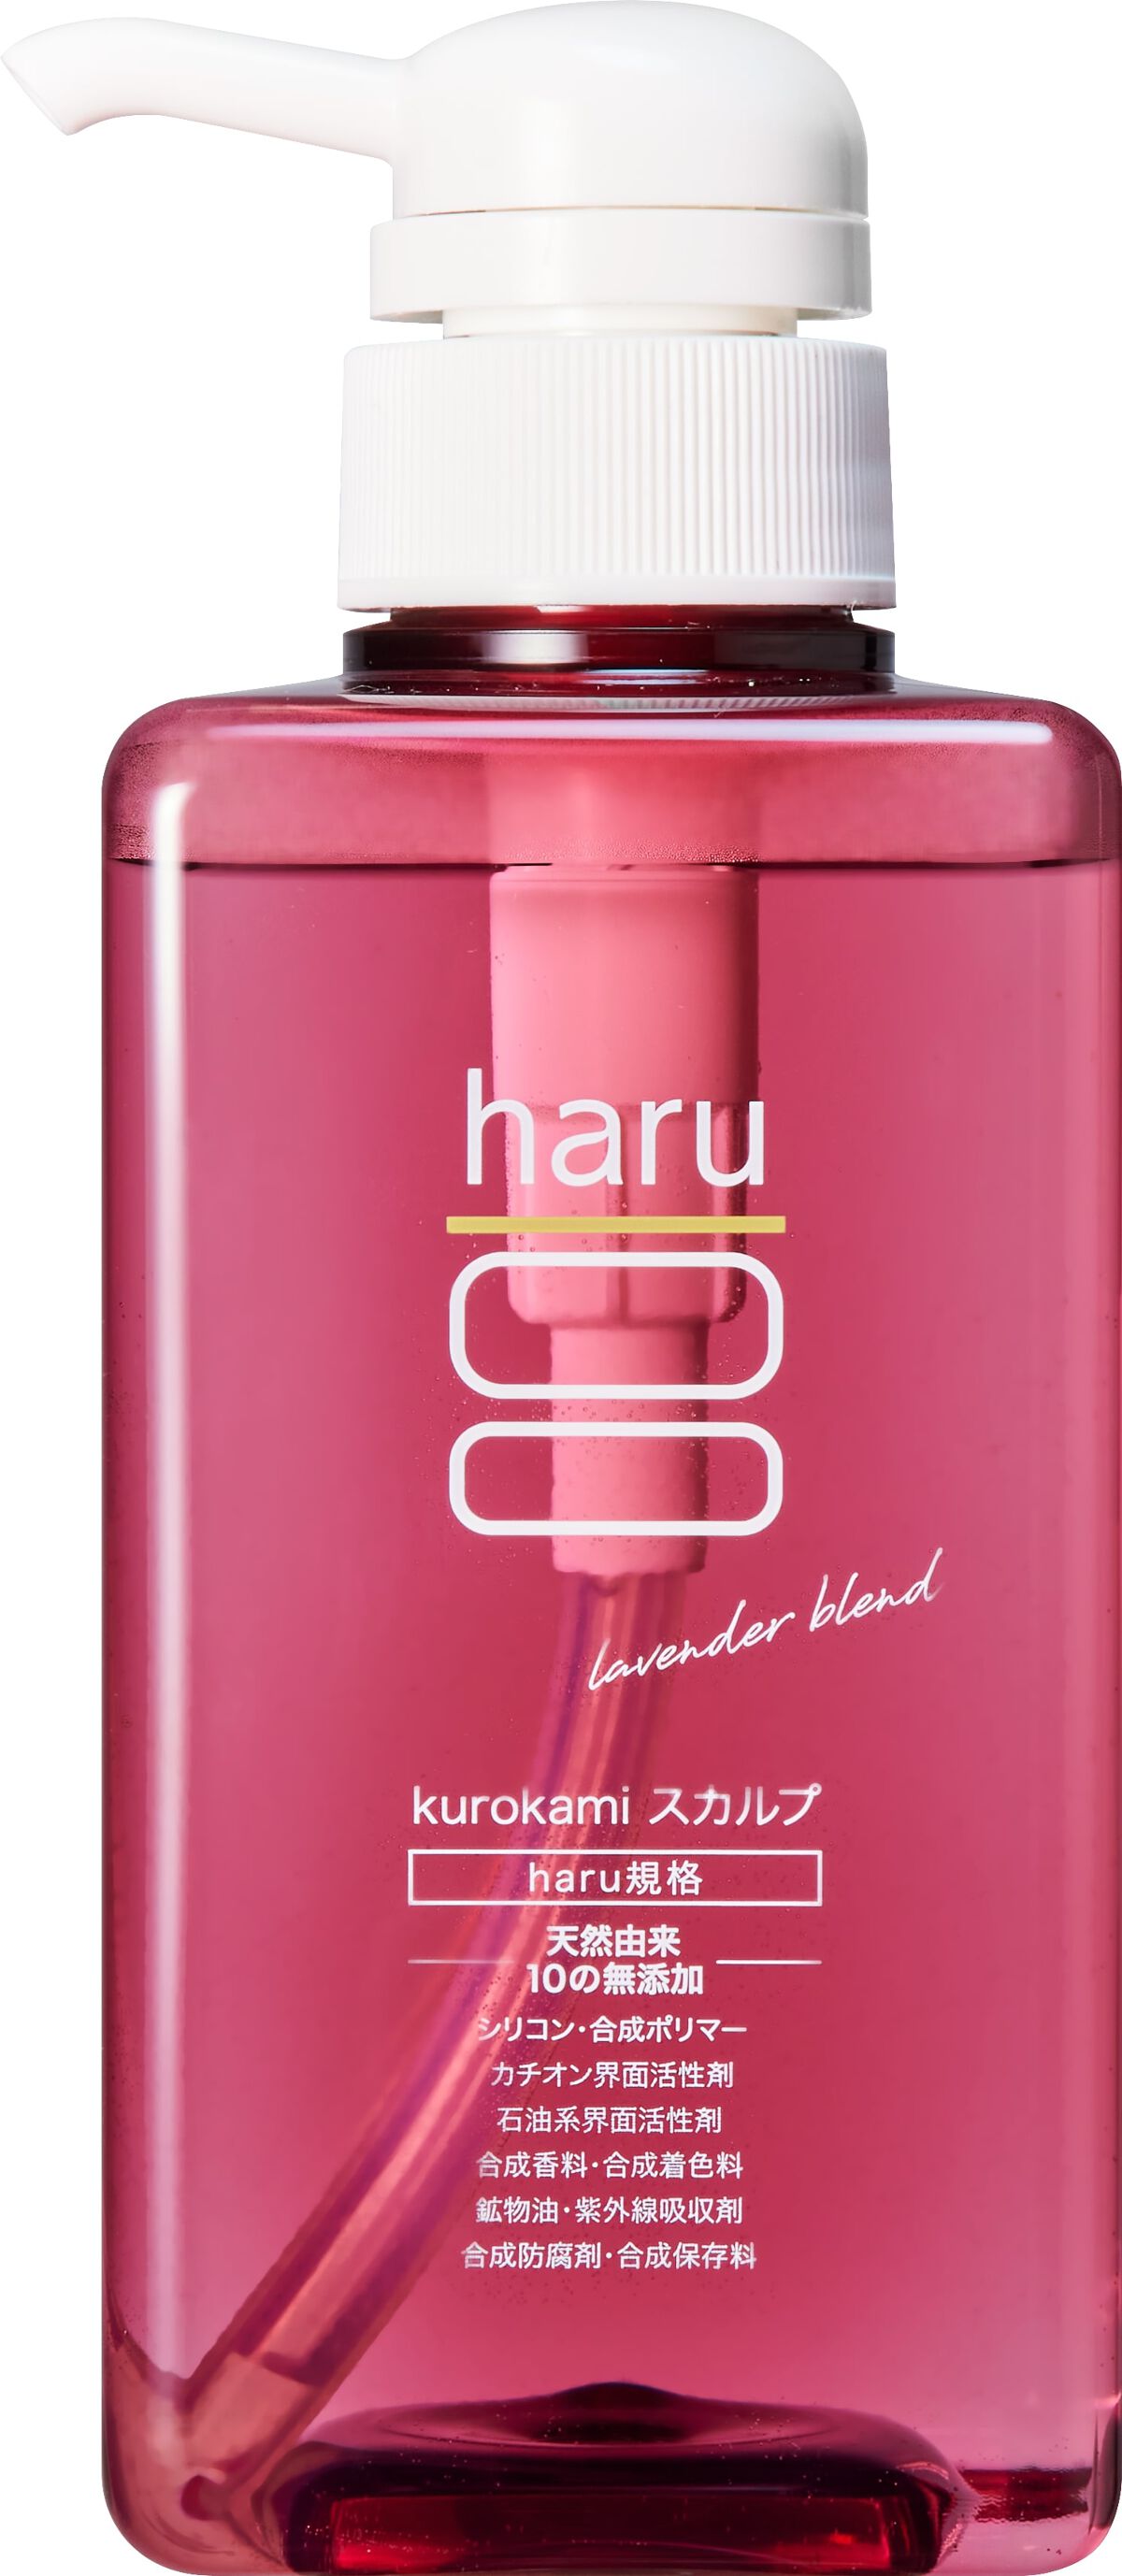 【新品未使用】haru kurokamiスカルプ ラベンダー 3本セット